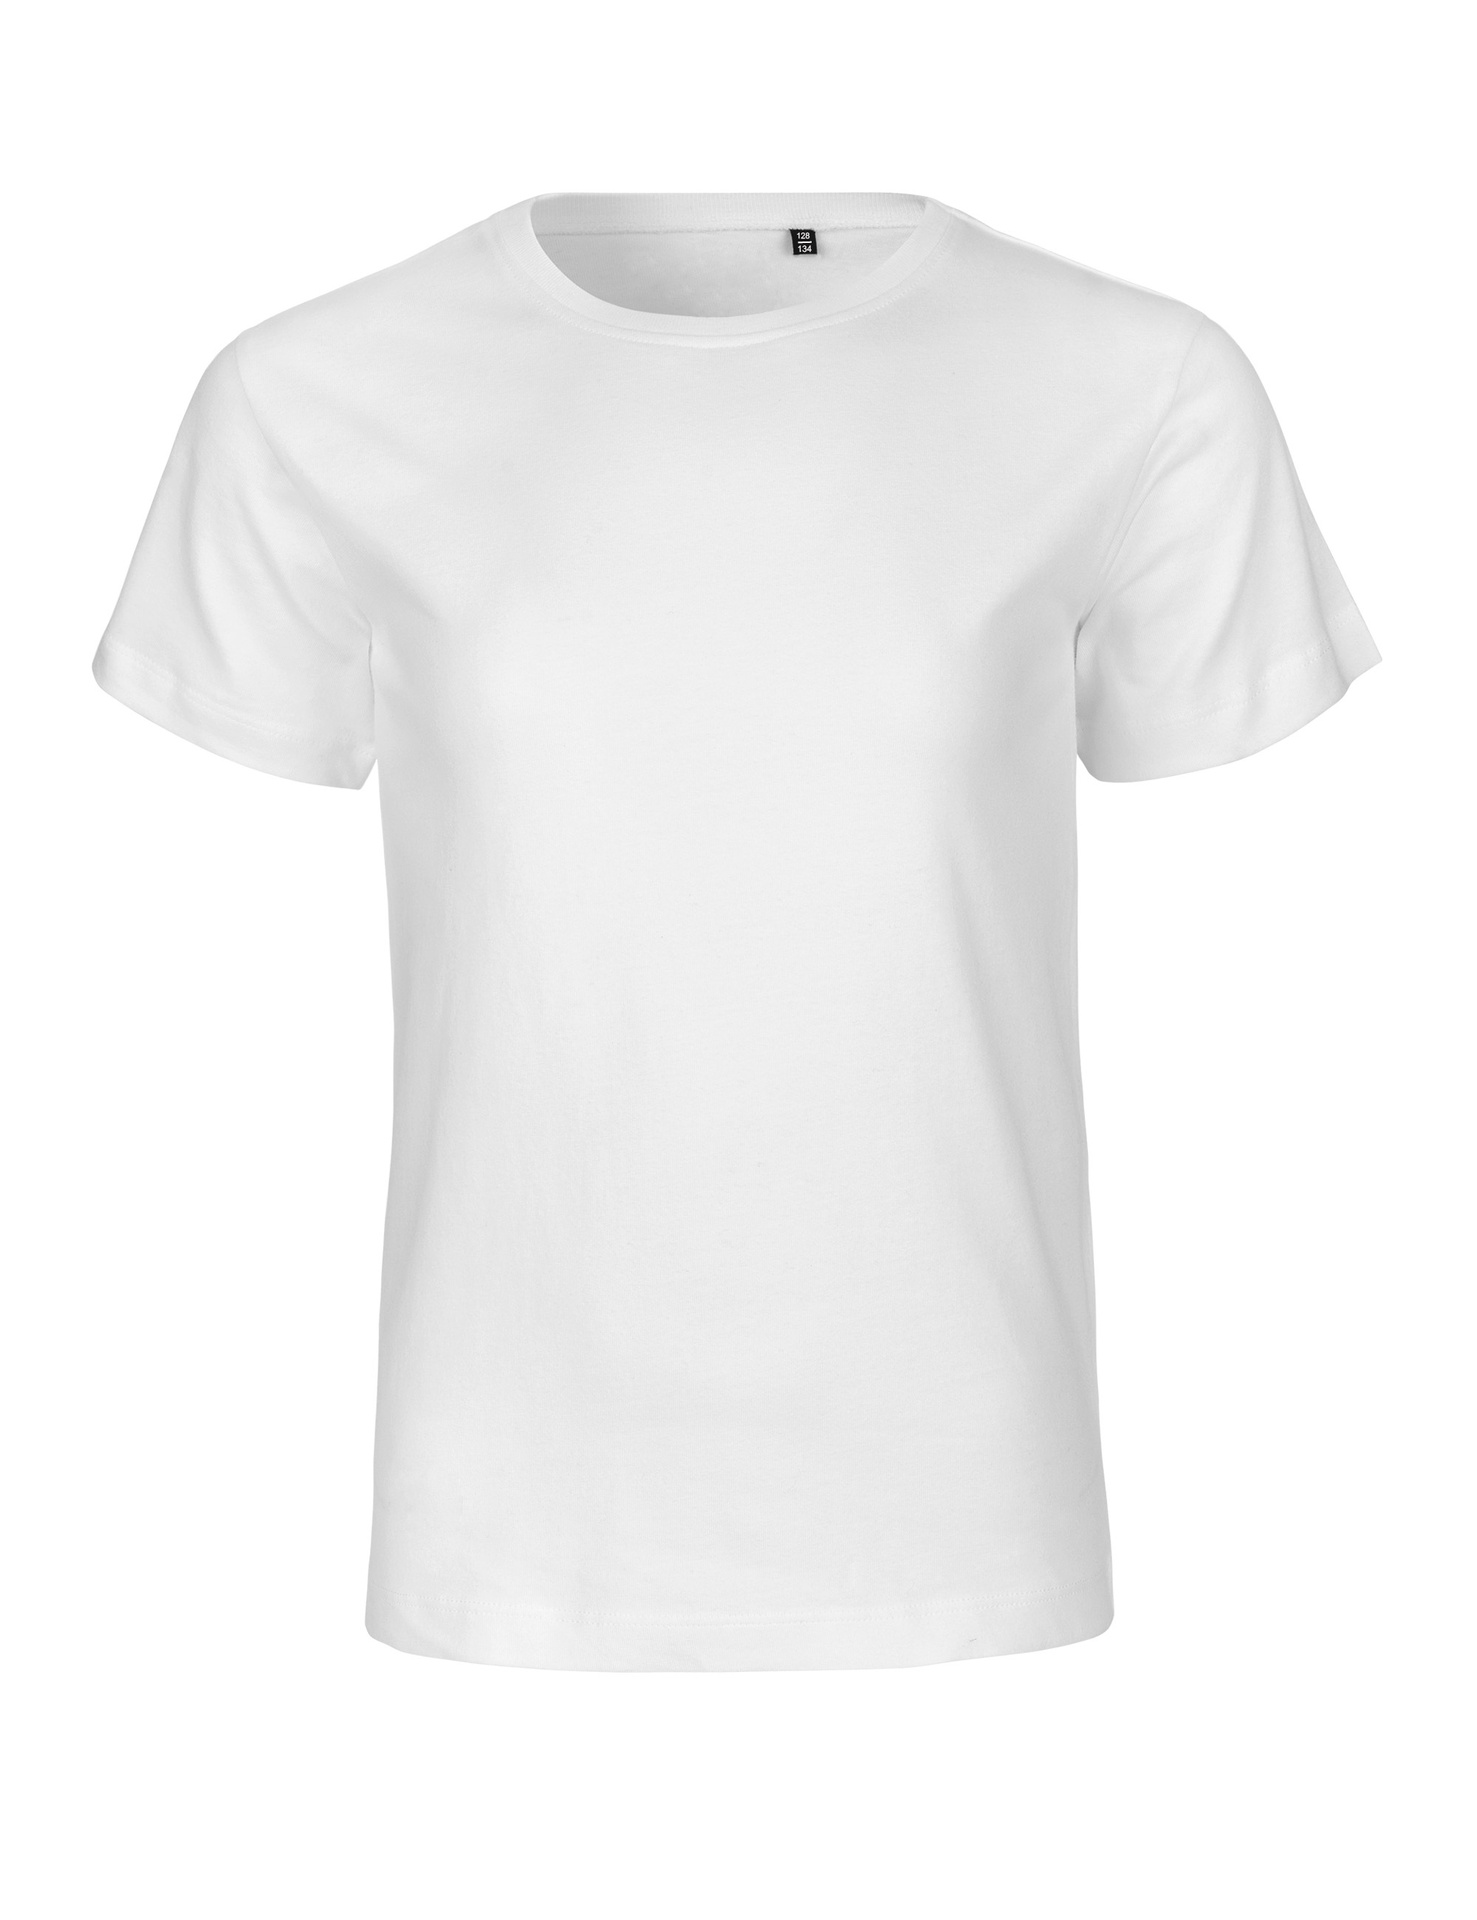 [PR/05959] Kids Tiger Cotton T-Shirt (White 01, 92/98 cm)